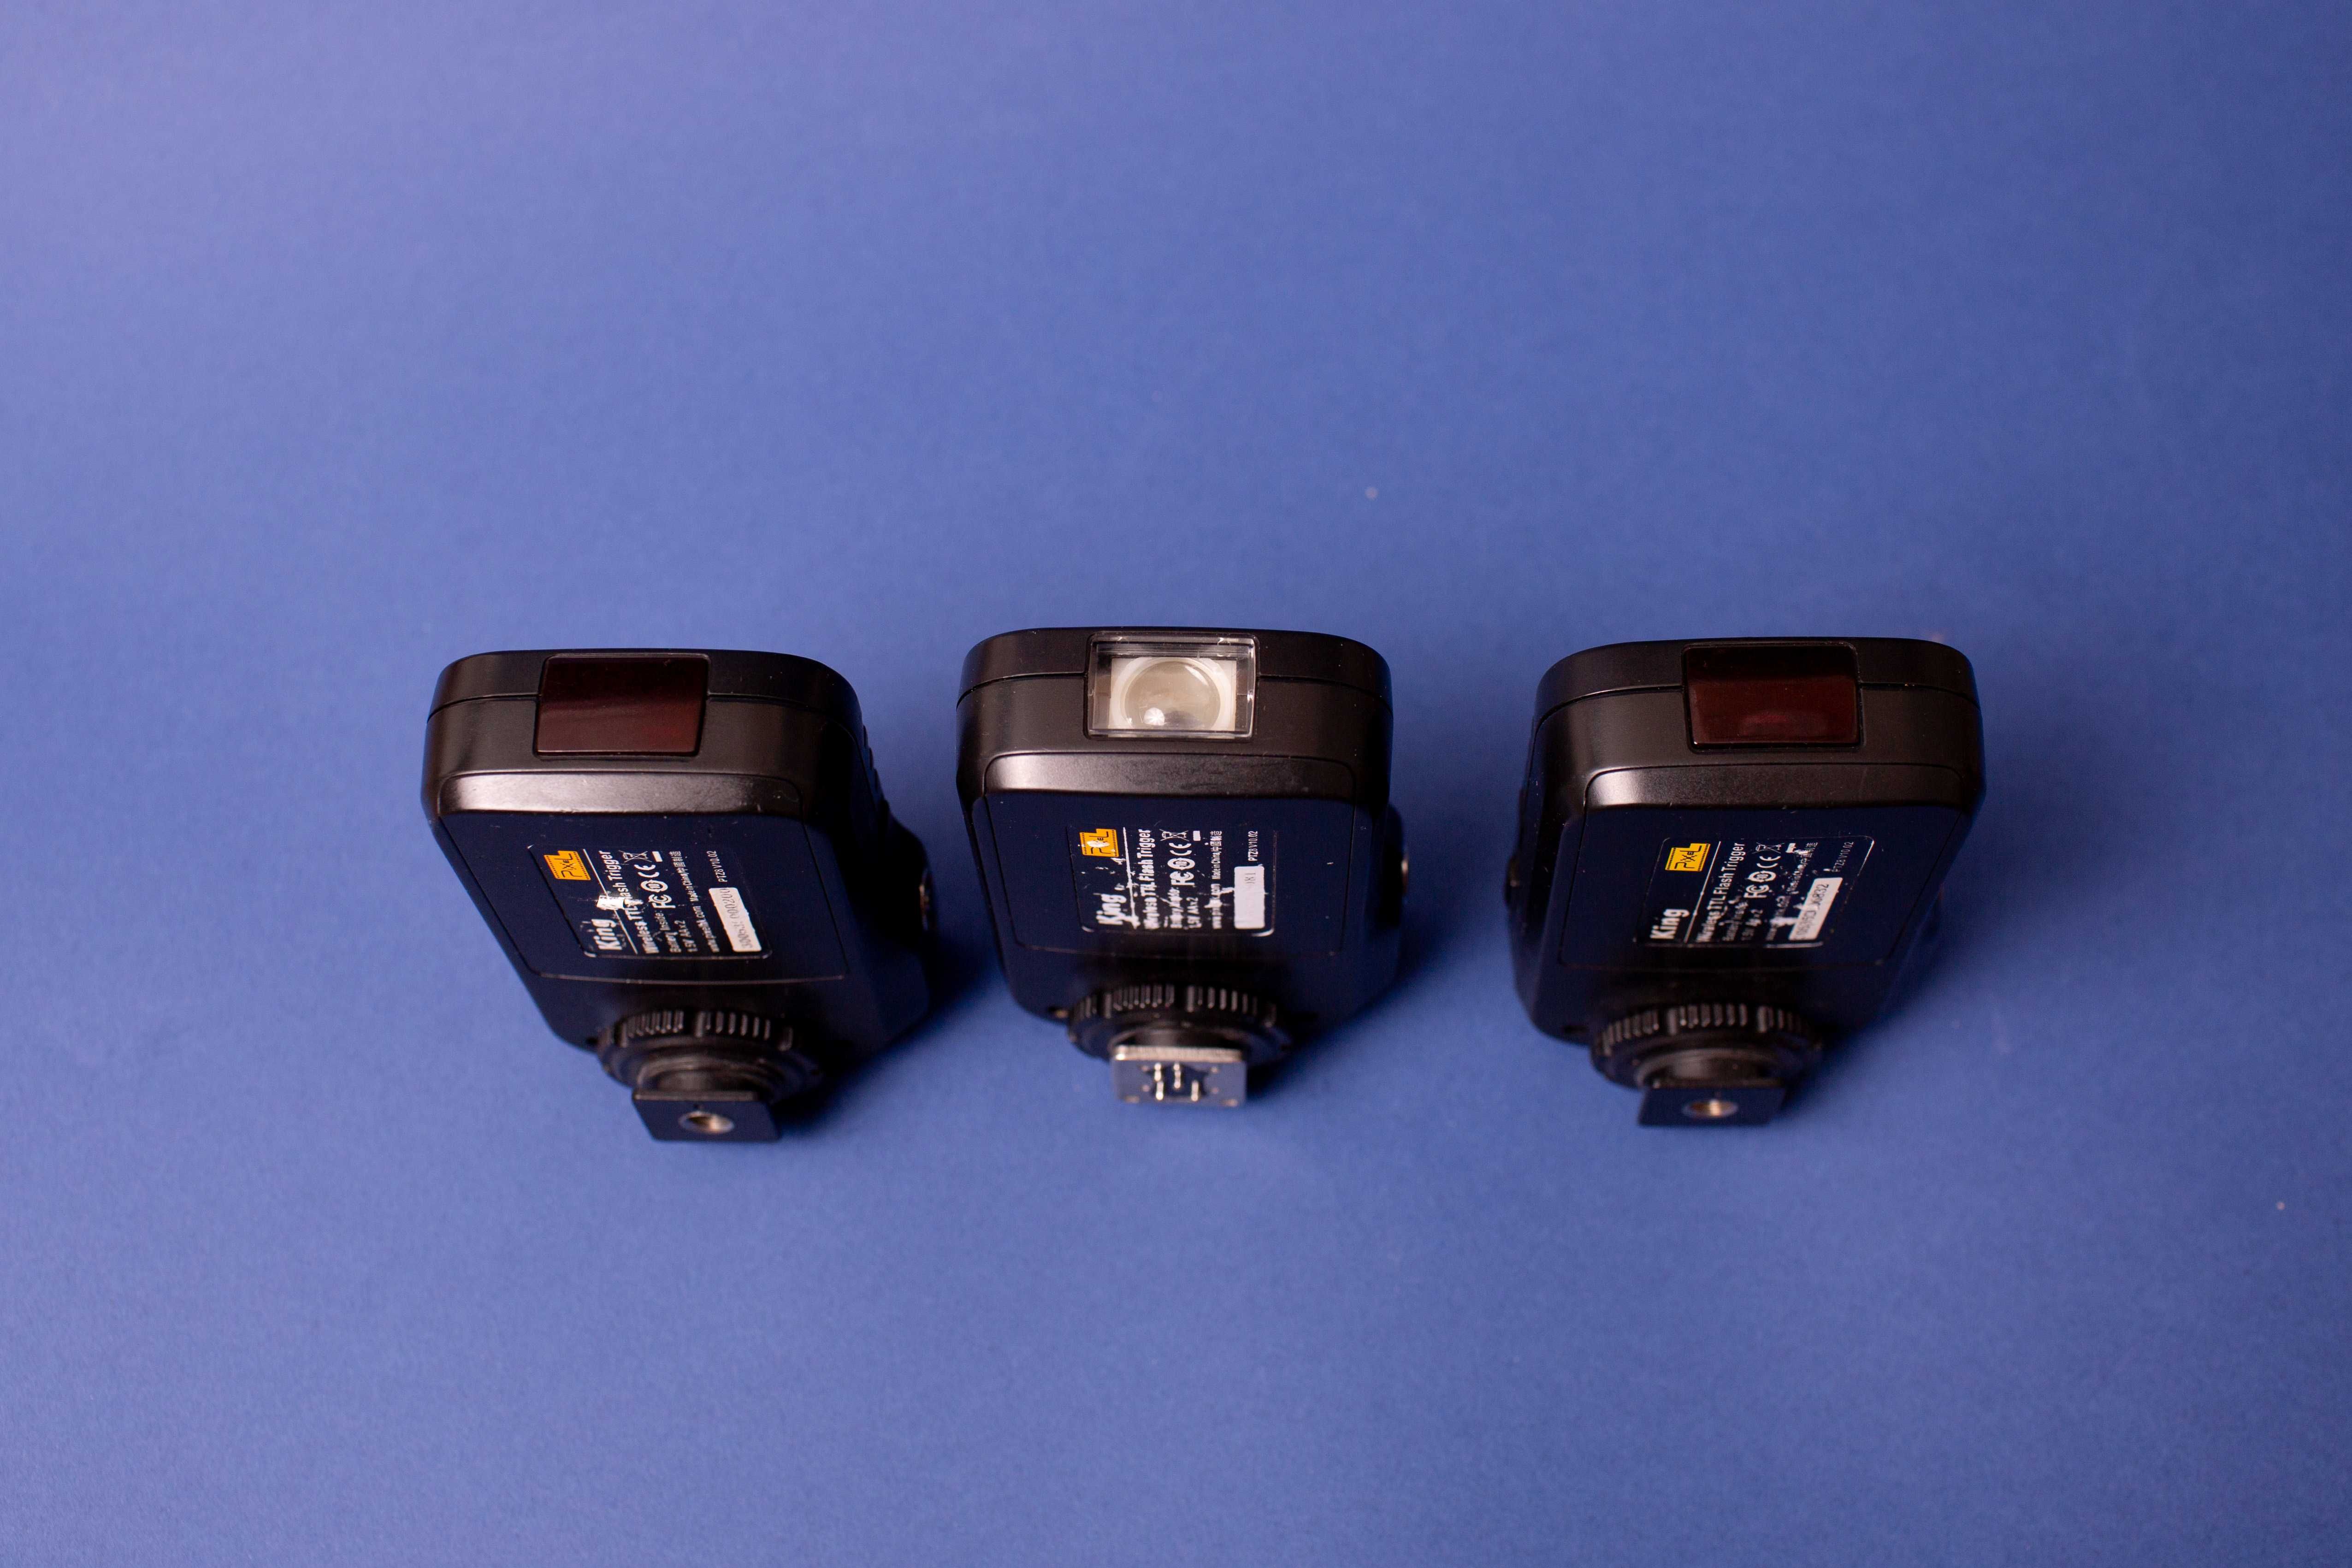 Declansator Pixel King Wireless I-TTl Flash Trigger pentru Nikon